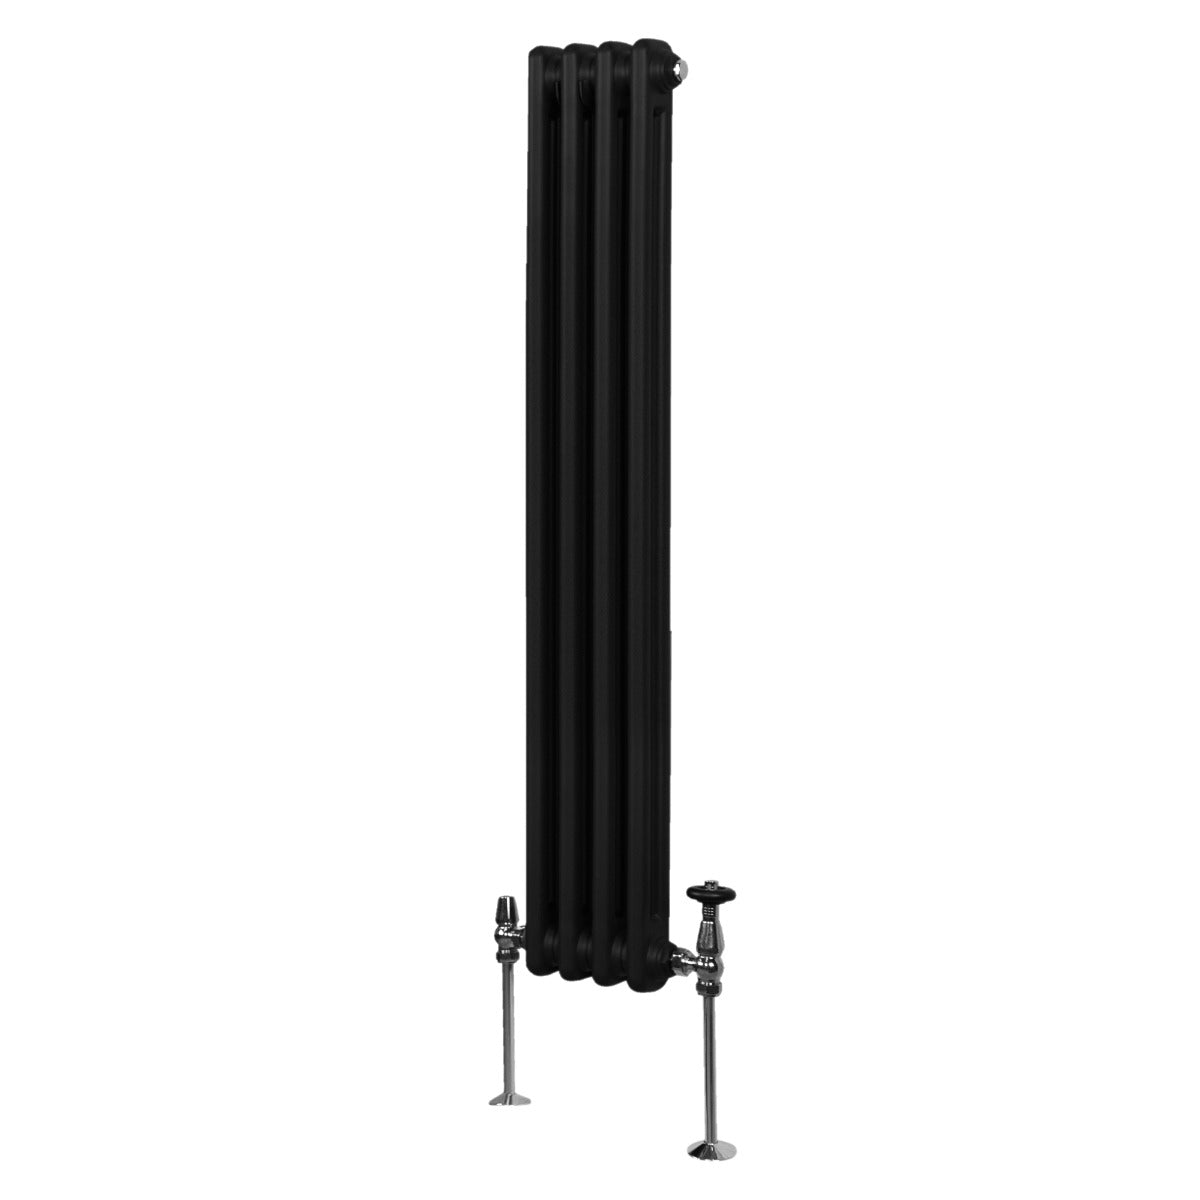 Termosifone Radiatore a 2 colonne per riscaldamento centralizzato verticale Nero150x20cm